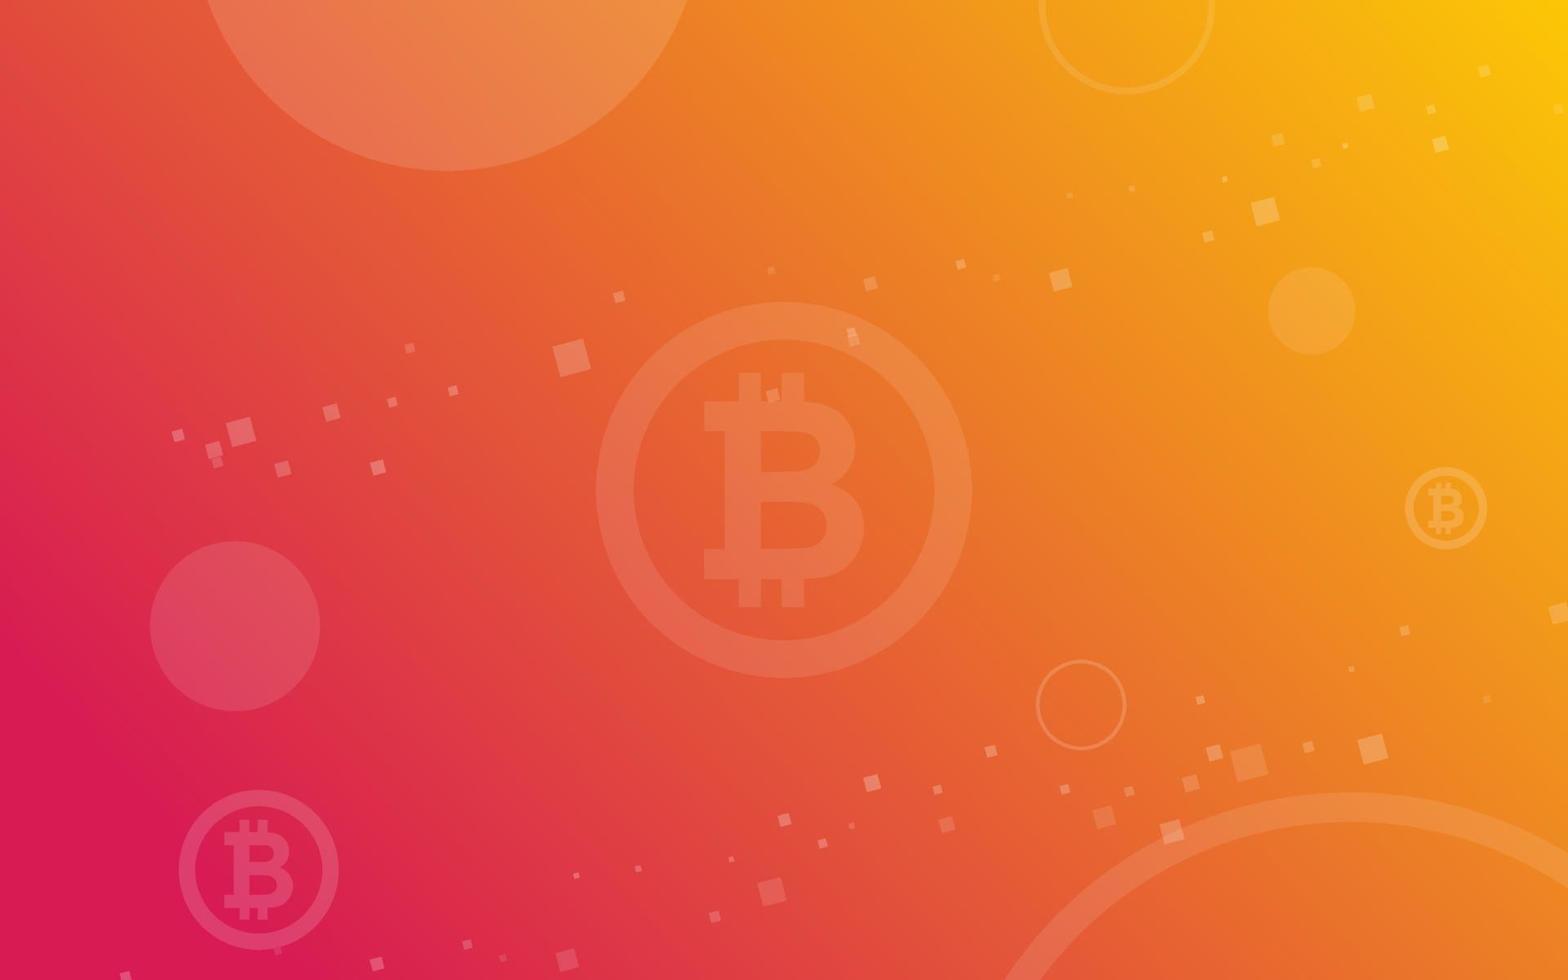 bitcoin crypto monnaie illustration vectorielle pour la page, le logo, la carte, la bannière, le web et l'impression. vecteur